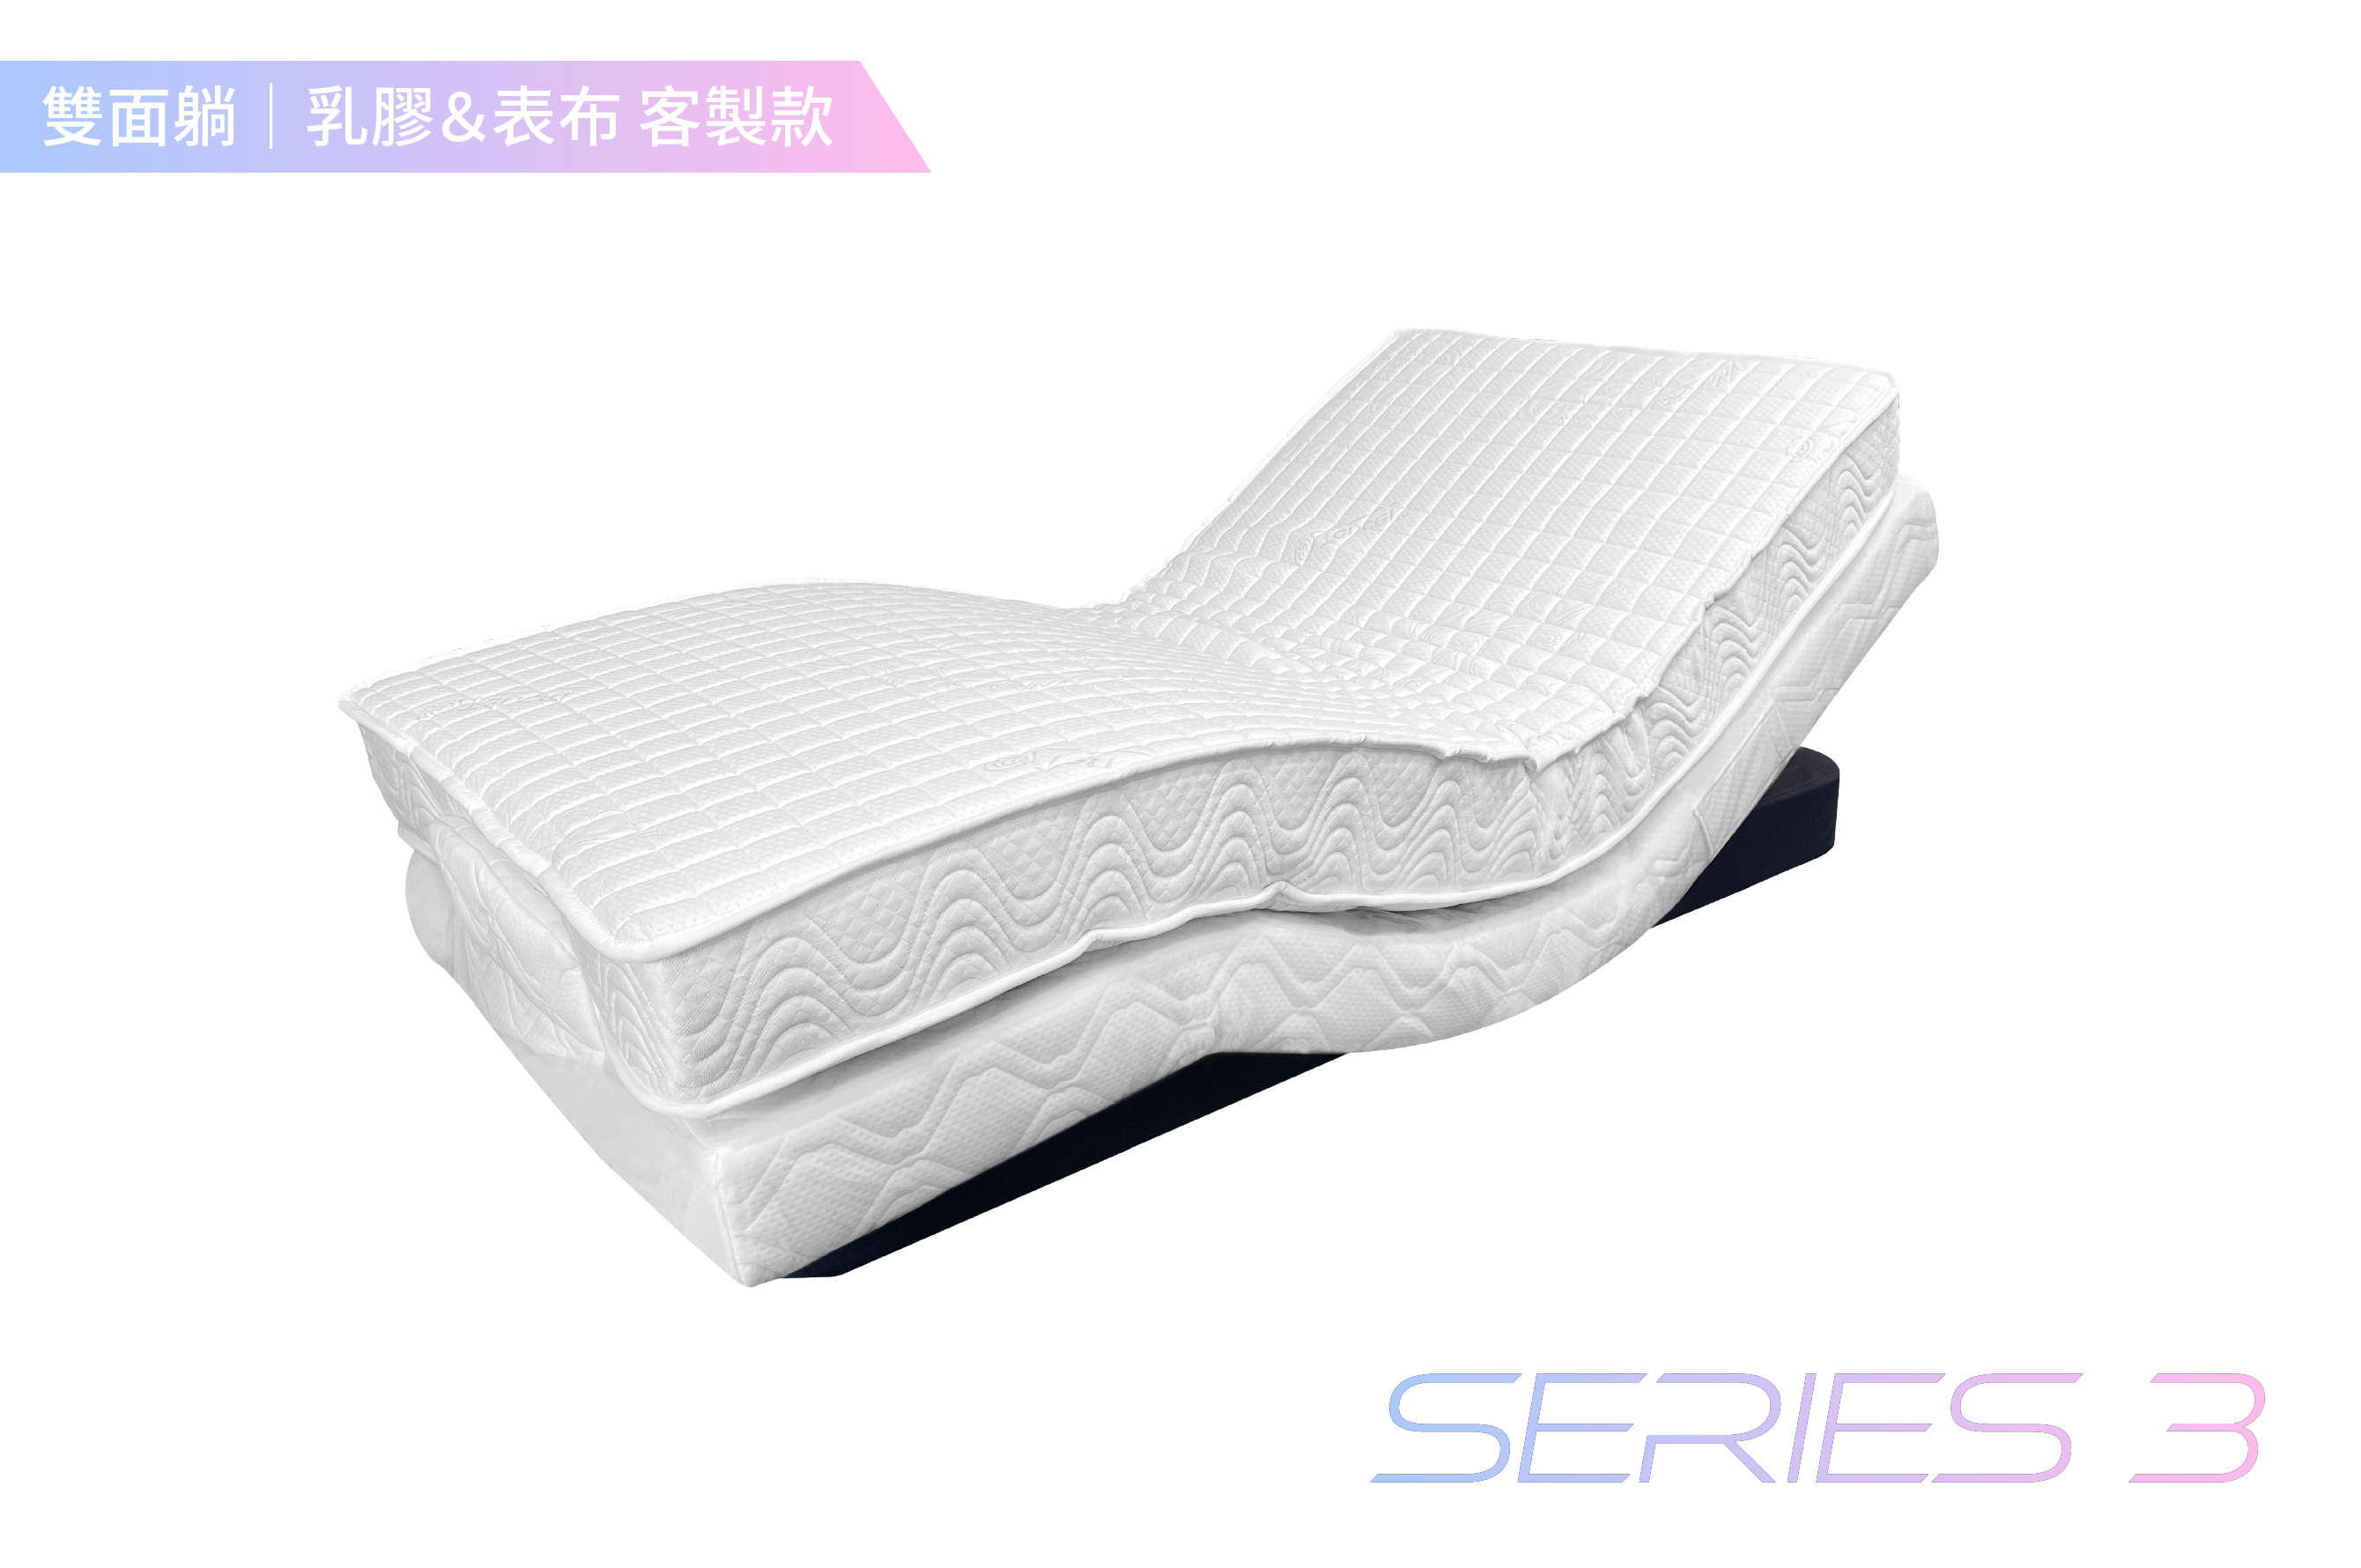 德爾康電動床 / 雙人5尺 / 雙面睡-客製化表布&乳膠厚度 / SERIES 3